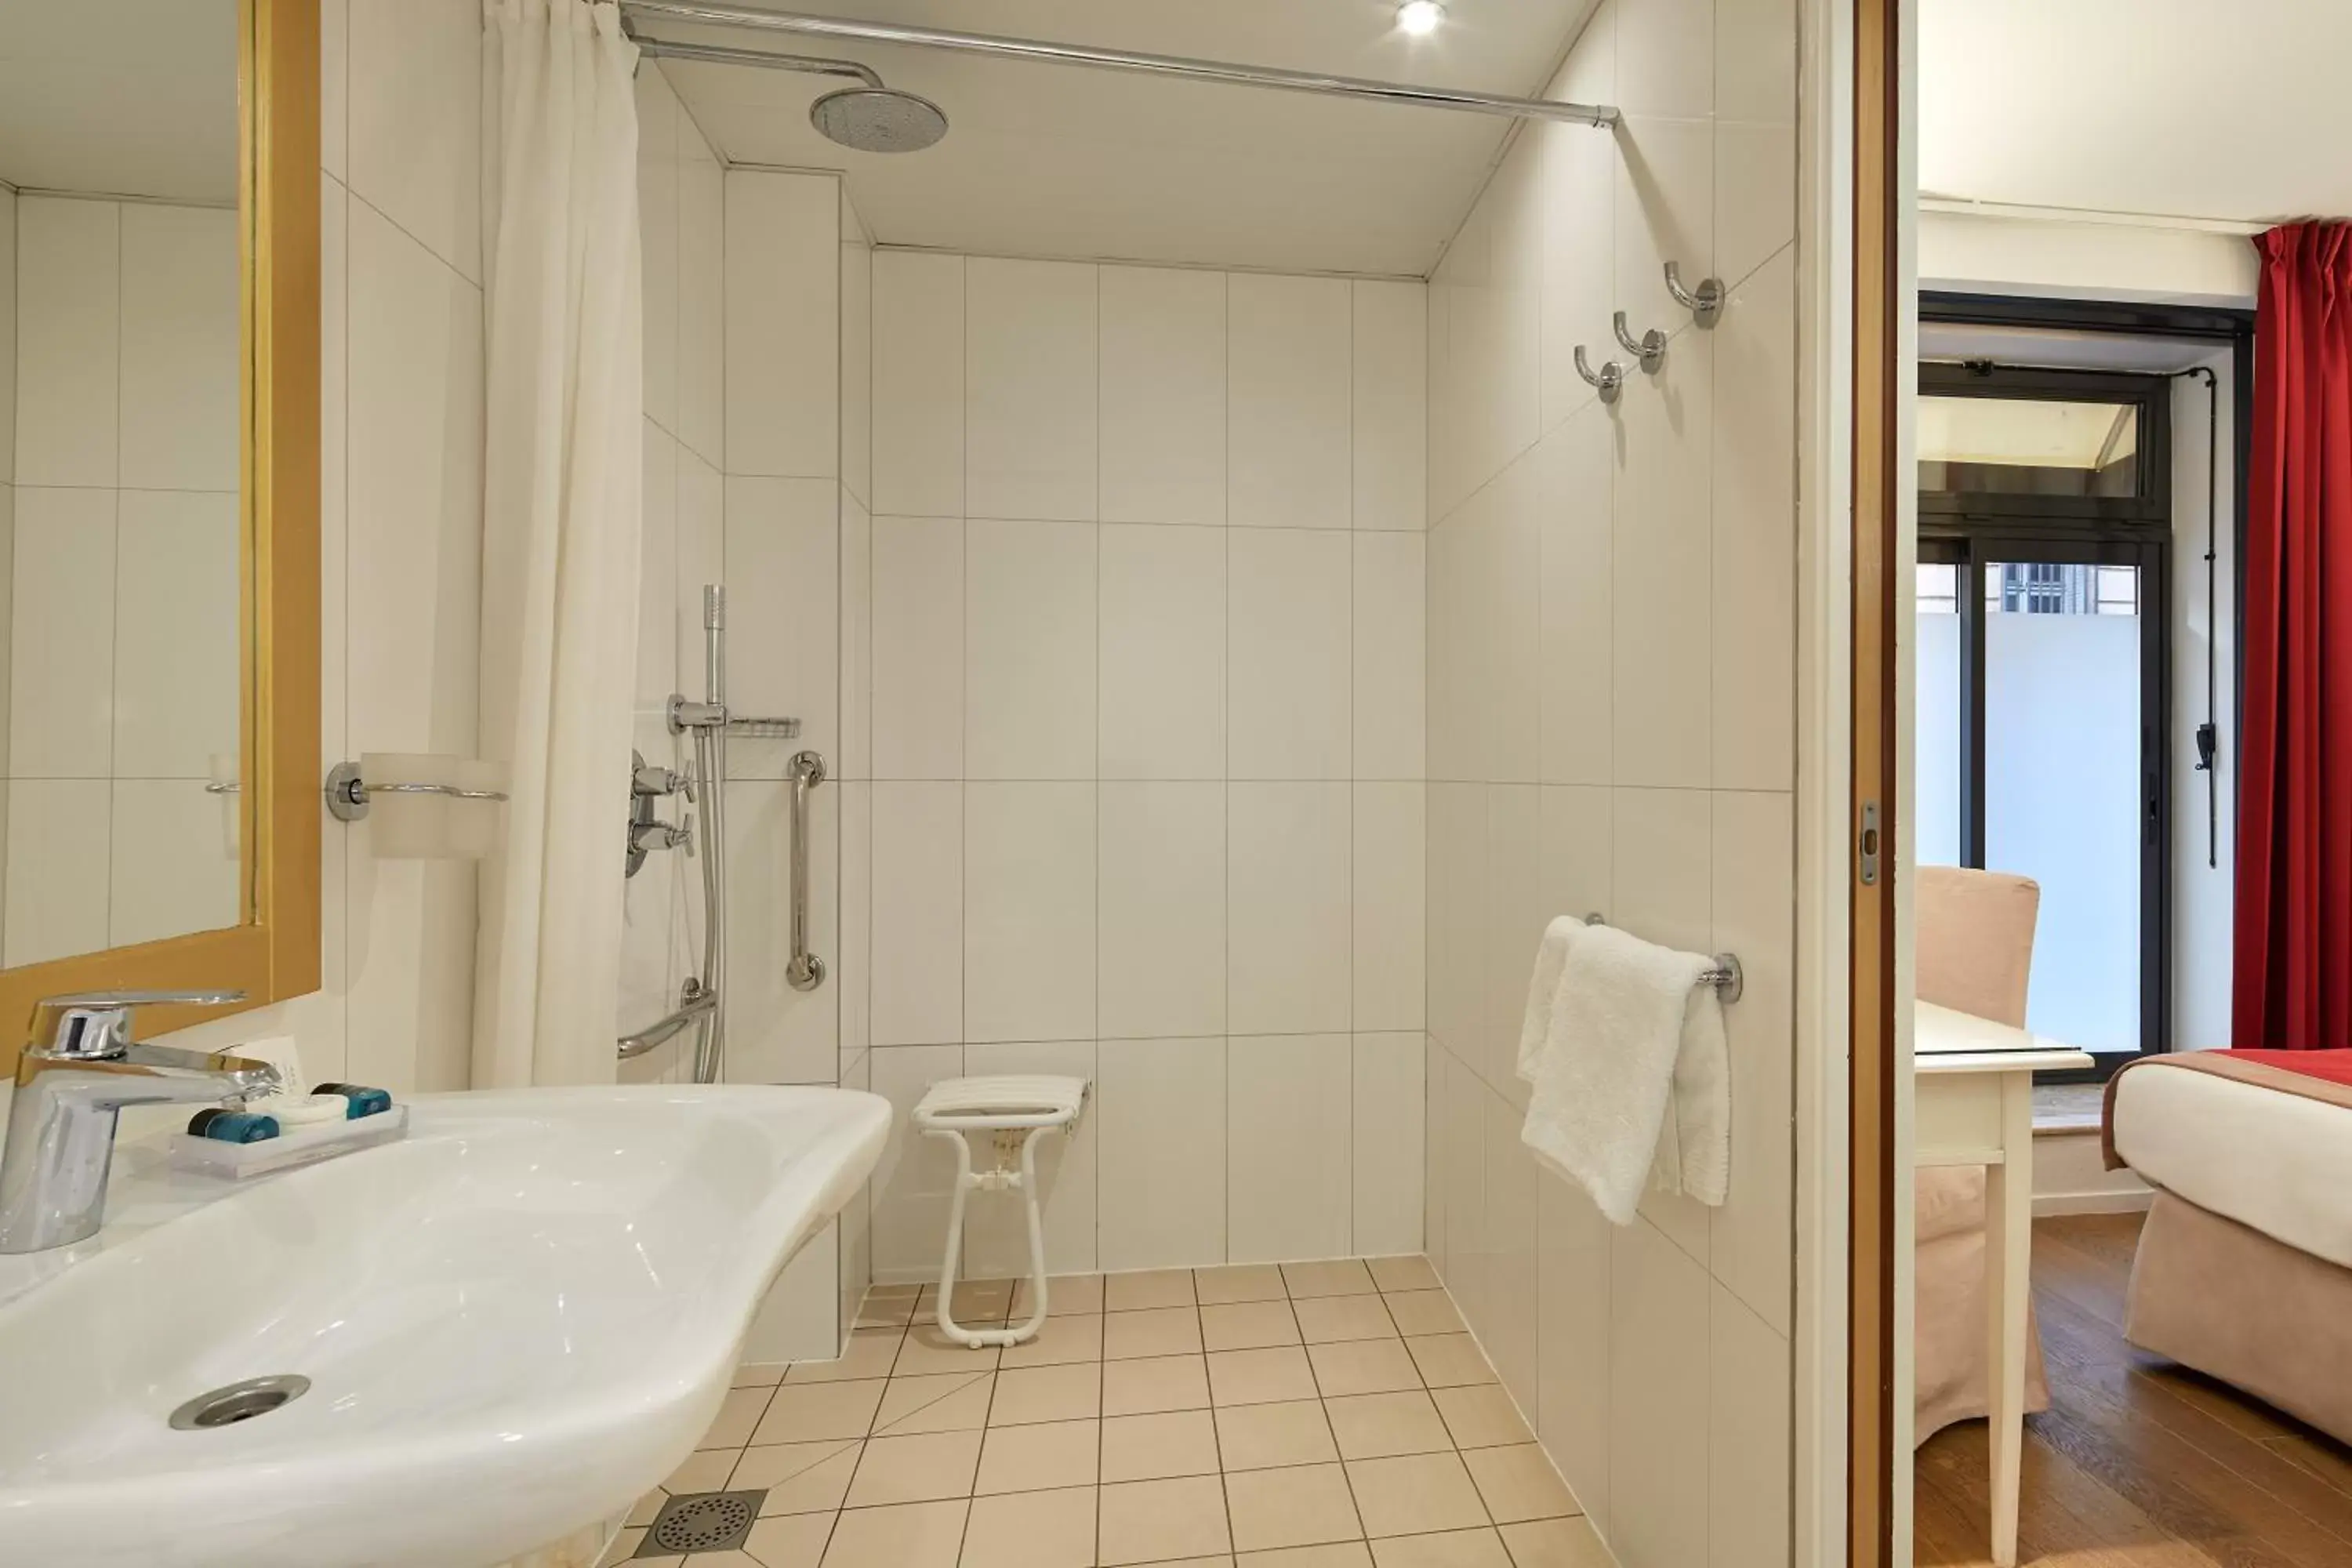 Shower, Bathroom in Austin's Arts Et Metiers Hotel